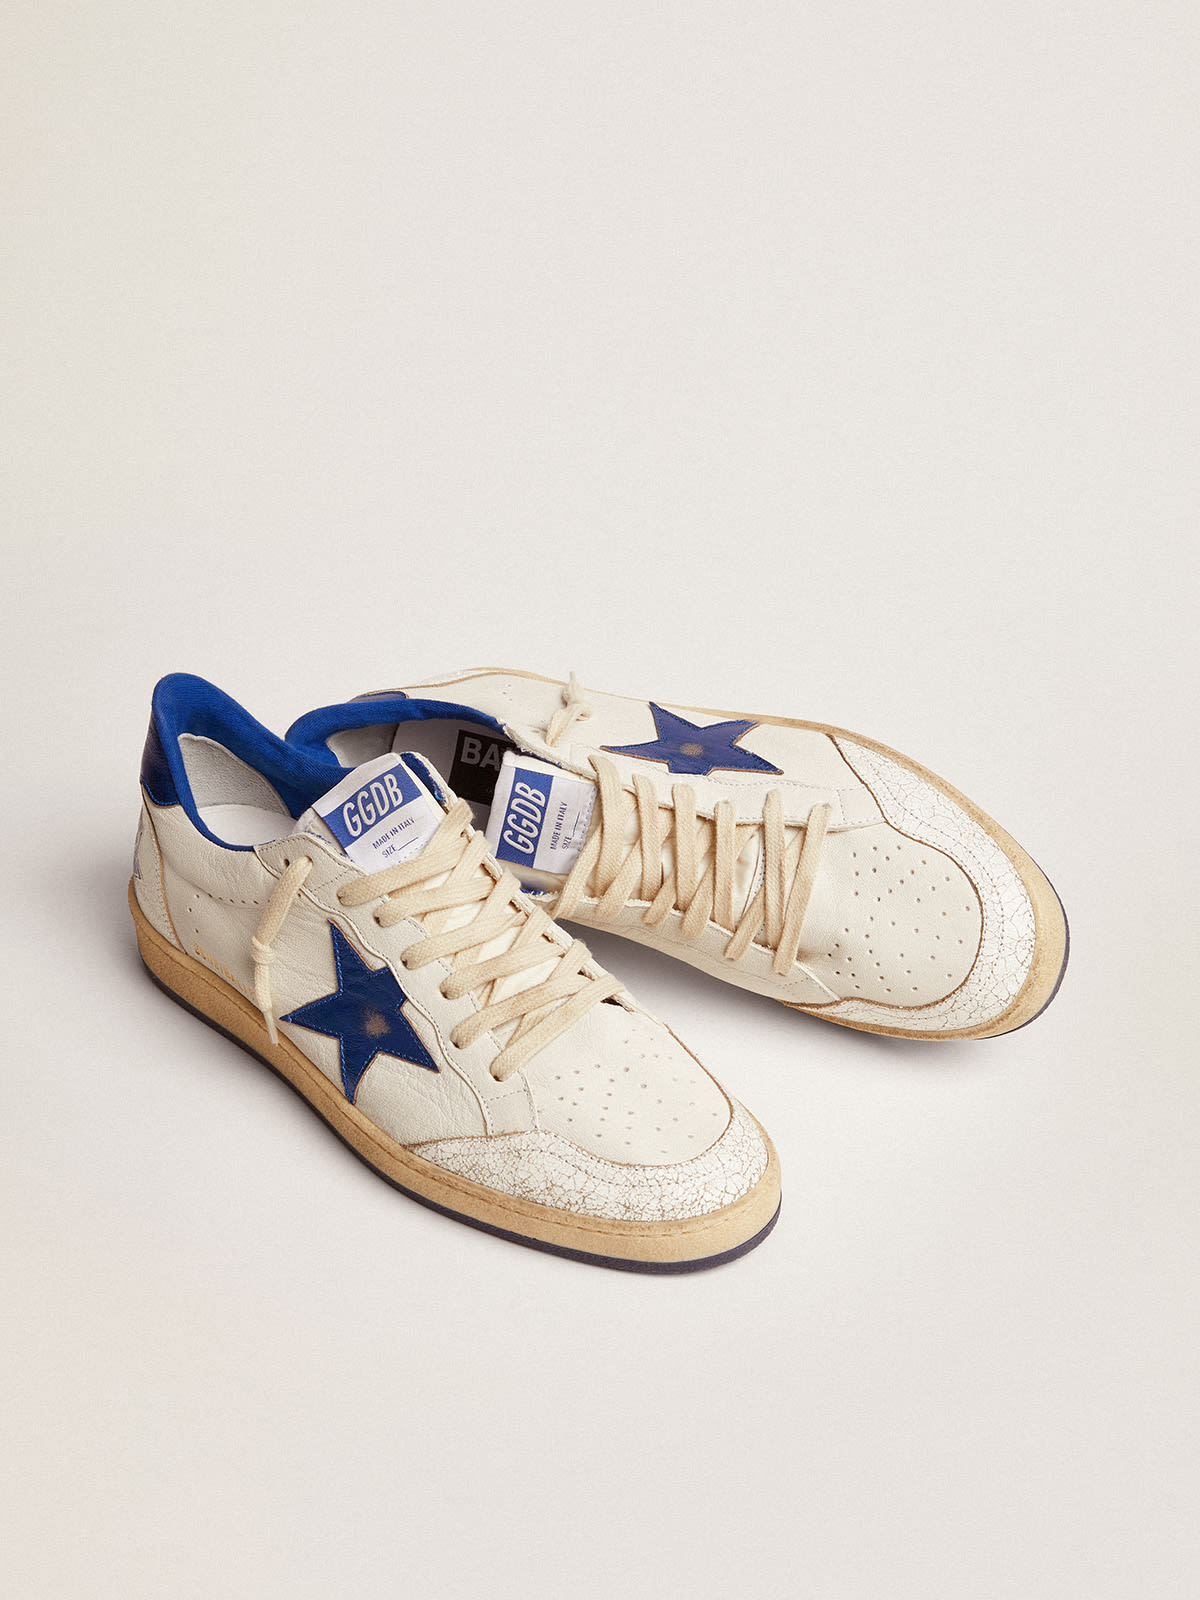 Golden Goose - Sneaker Ball Star aus weißem Nappaleder mit Stern und Fersenpartie aus kornblumenblauem Metallic-Leder in 